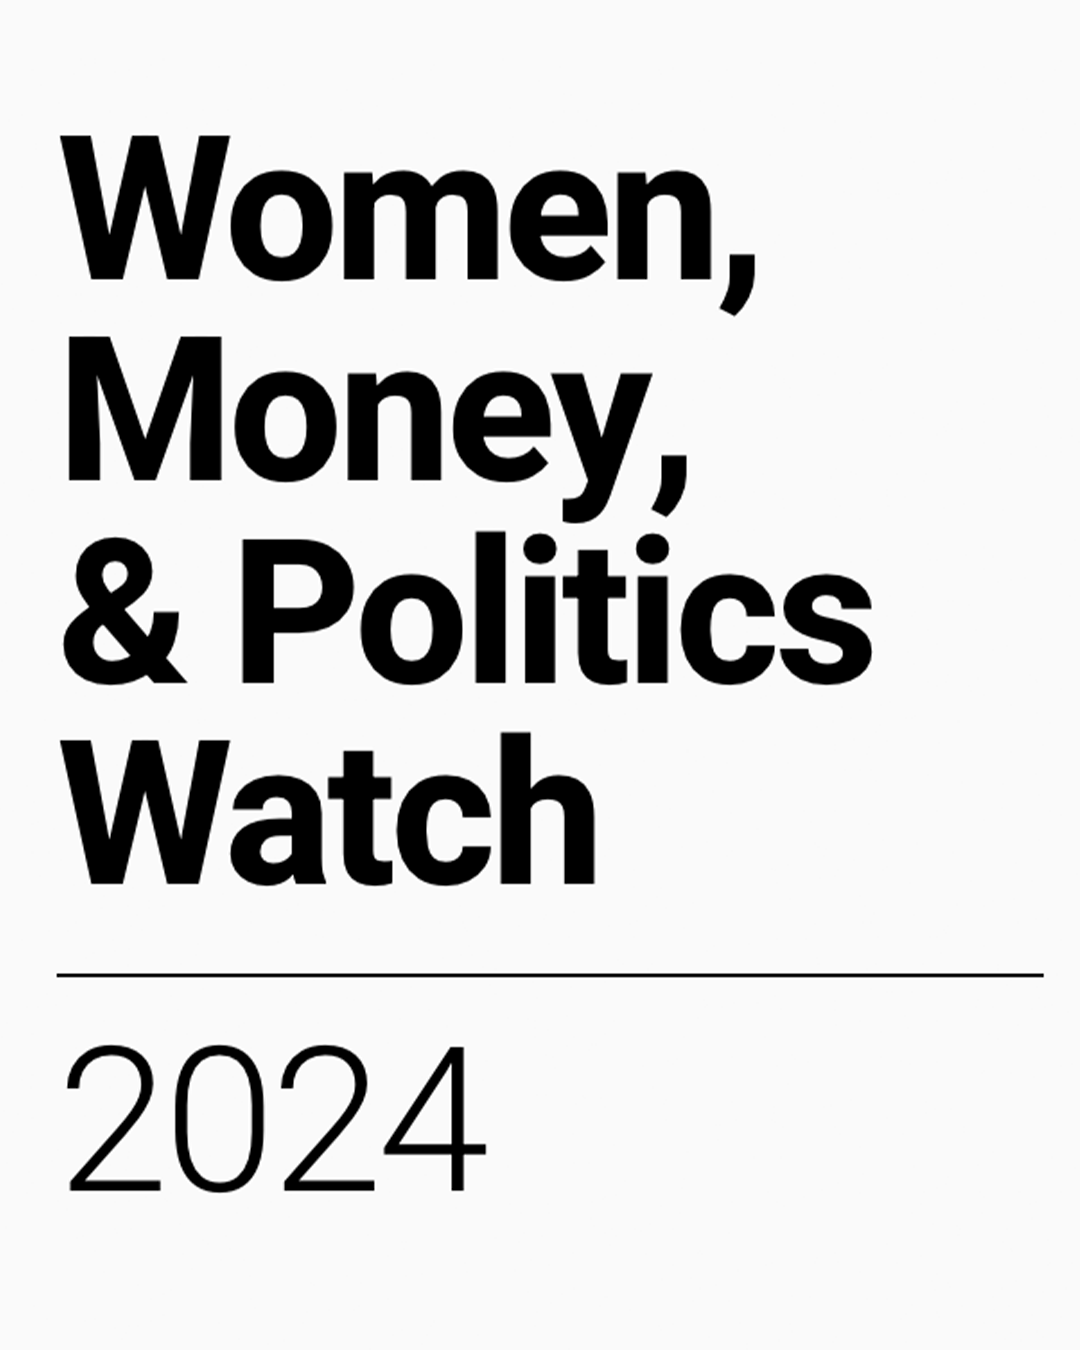 Women, Money, & Politics Watch 2024 text logo